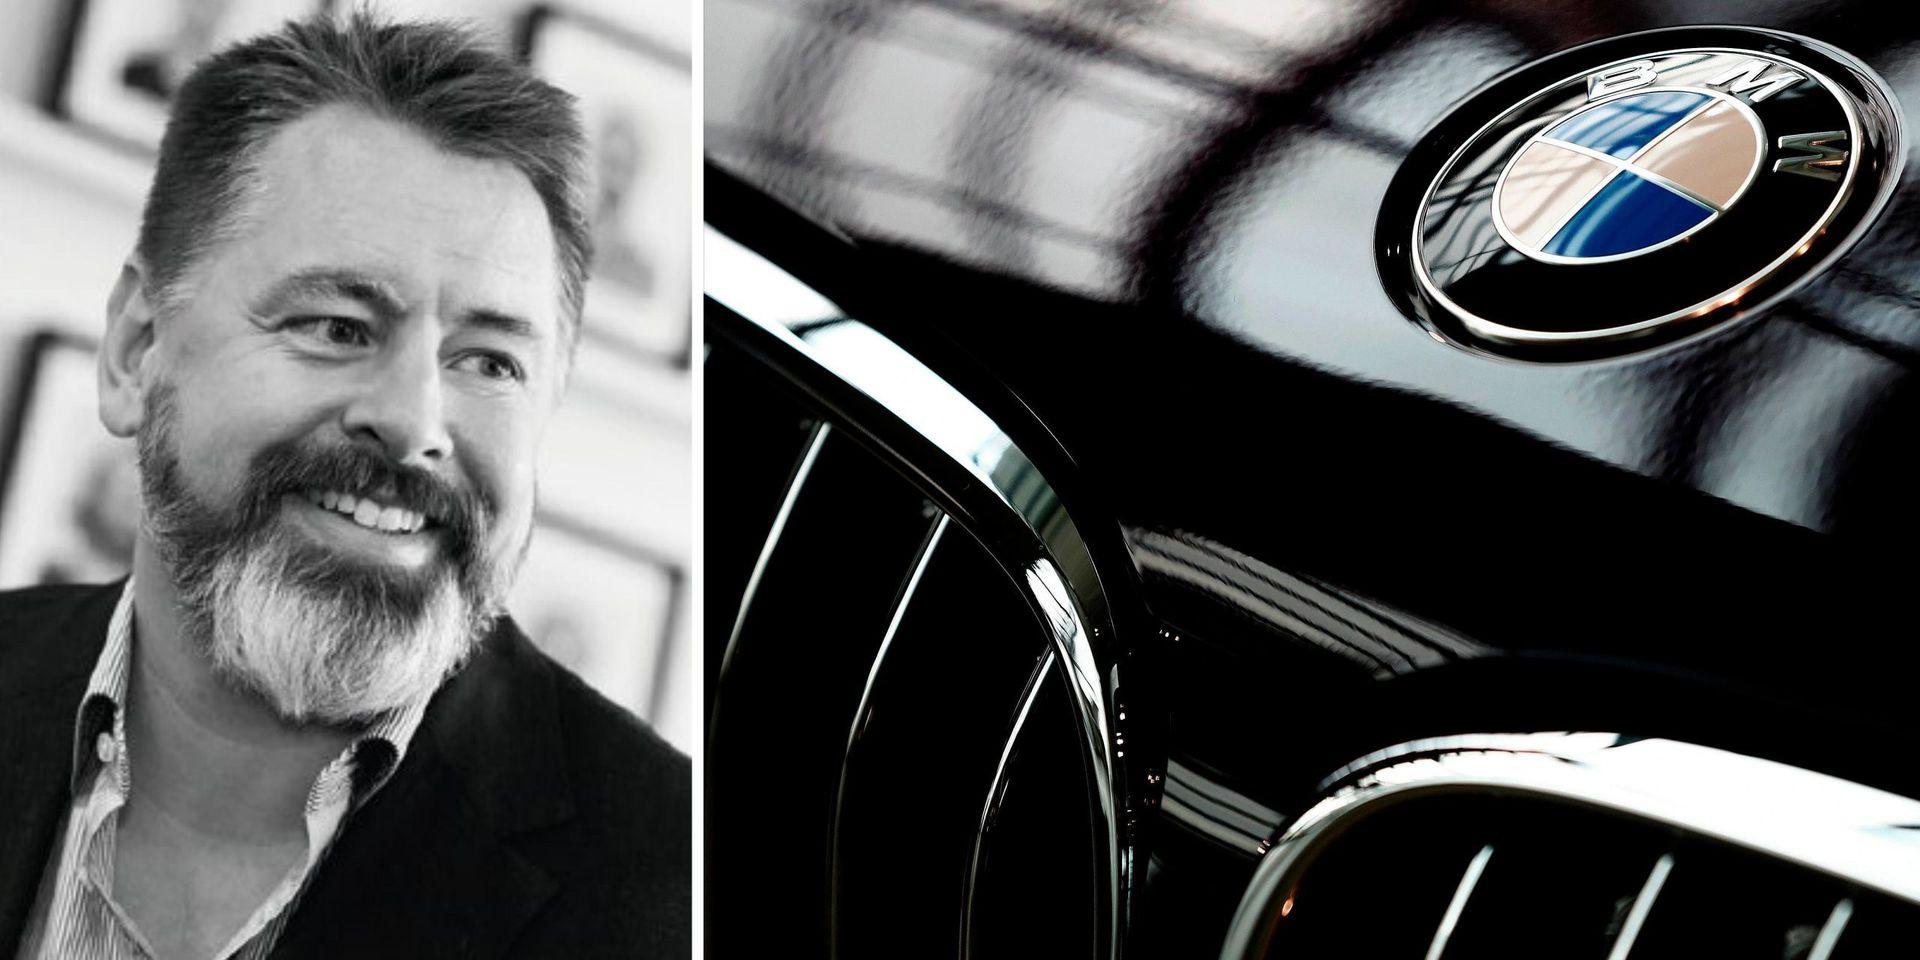 Smart Eyes vd Martin Krantz och medarbetare i Göteborg har BMW som kund för sin ögonigenkänningsteknik.